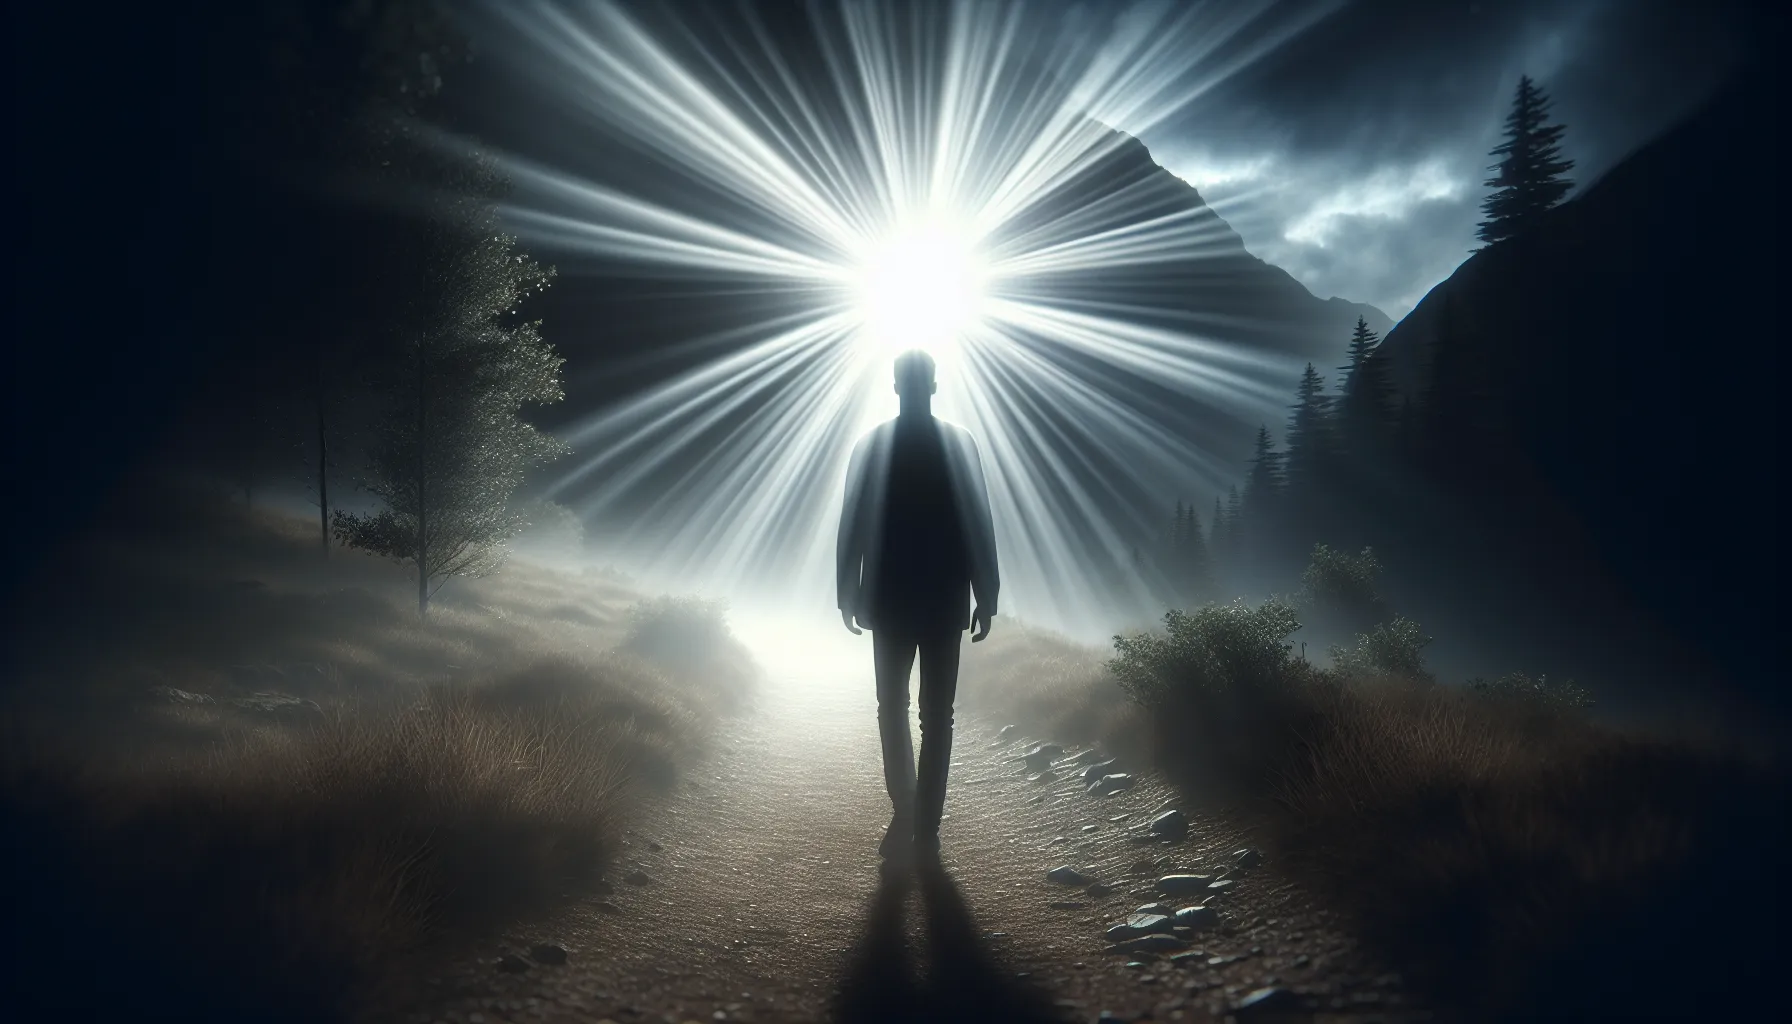 Imagen de una persona caminando por un sendero iluminado con una luz divina que simboliza la divina providencia en la Biblia.